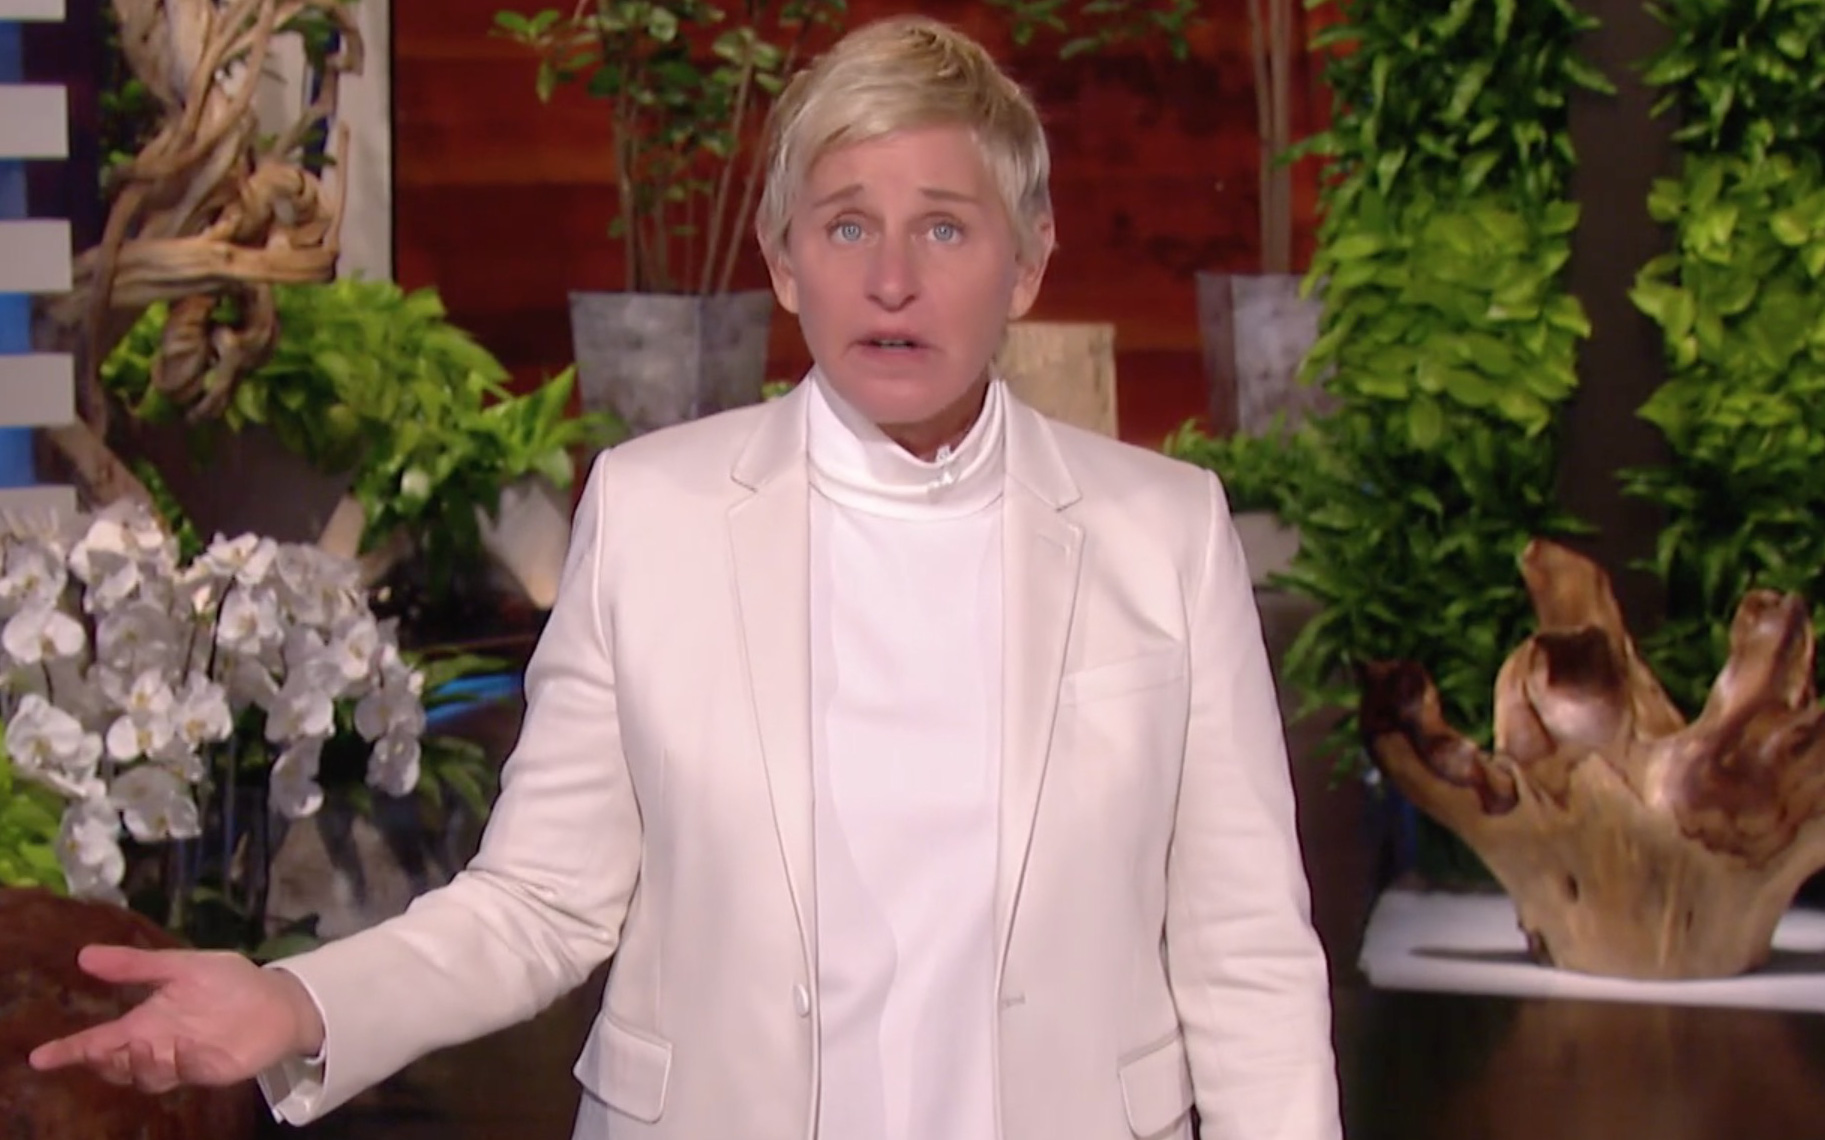 NÓNG: MC quyền lực nước Mỹ Ellen DeGeneres xác nhận dương tính với COVID-19